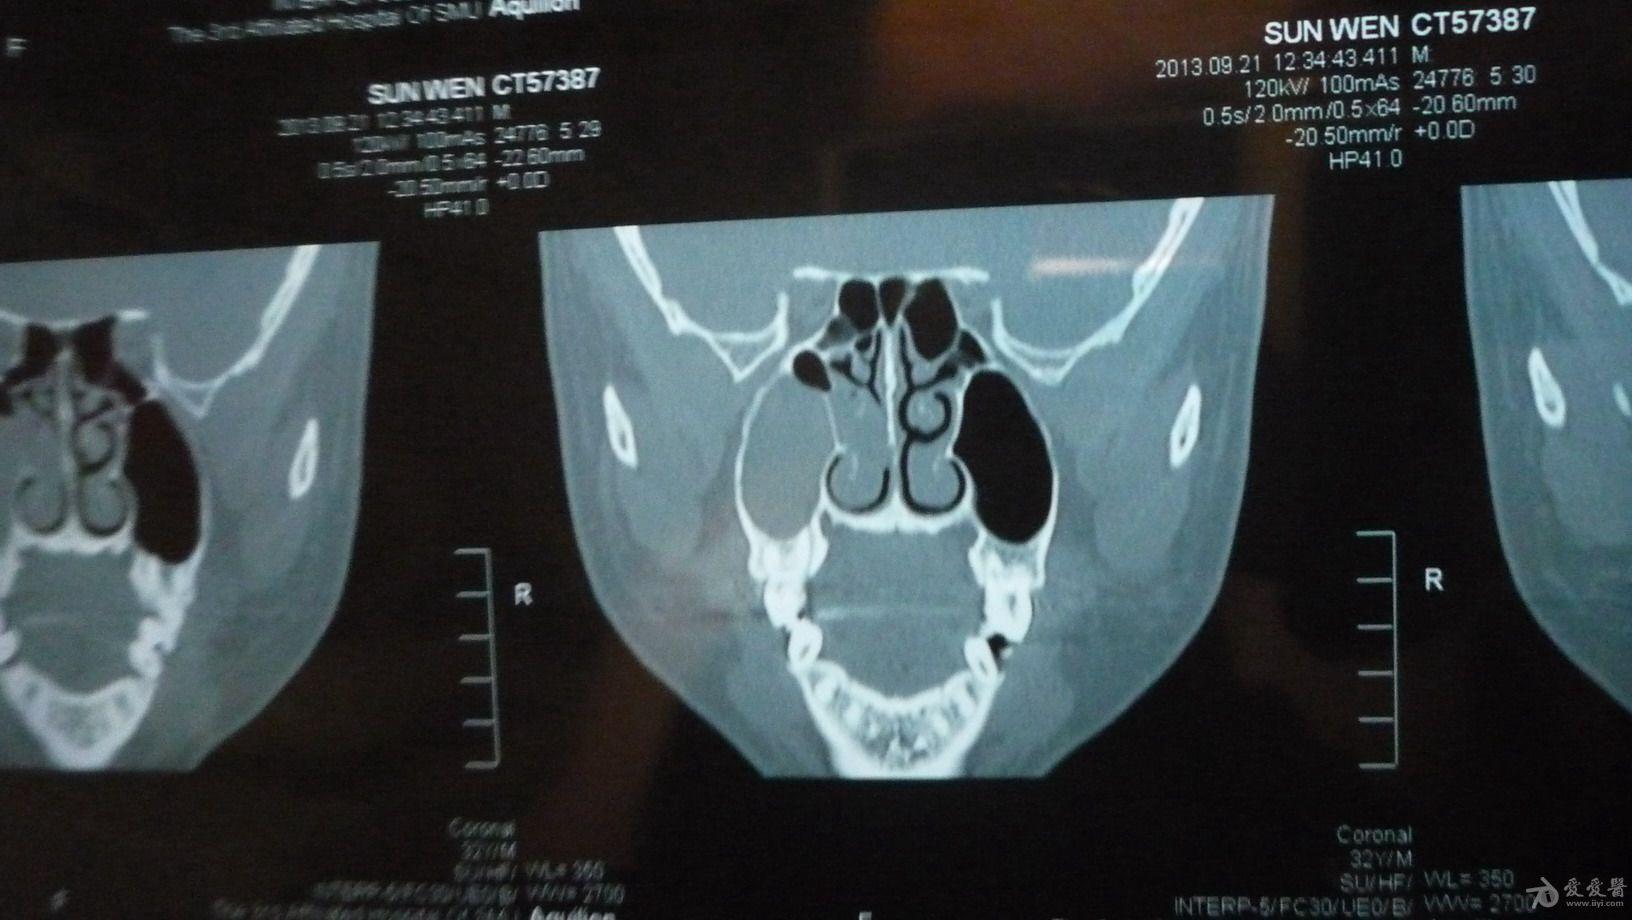 上颌窦解剖图CT图片